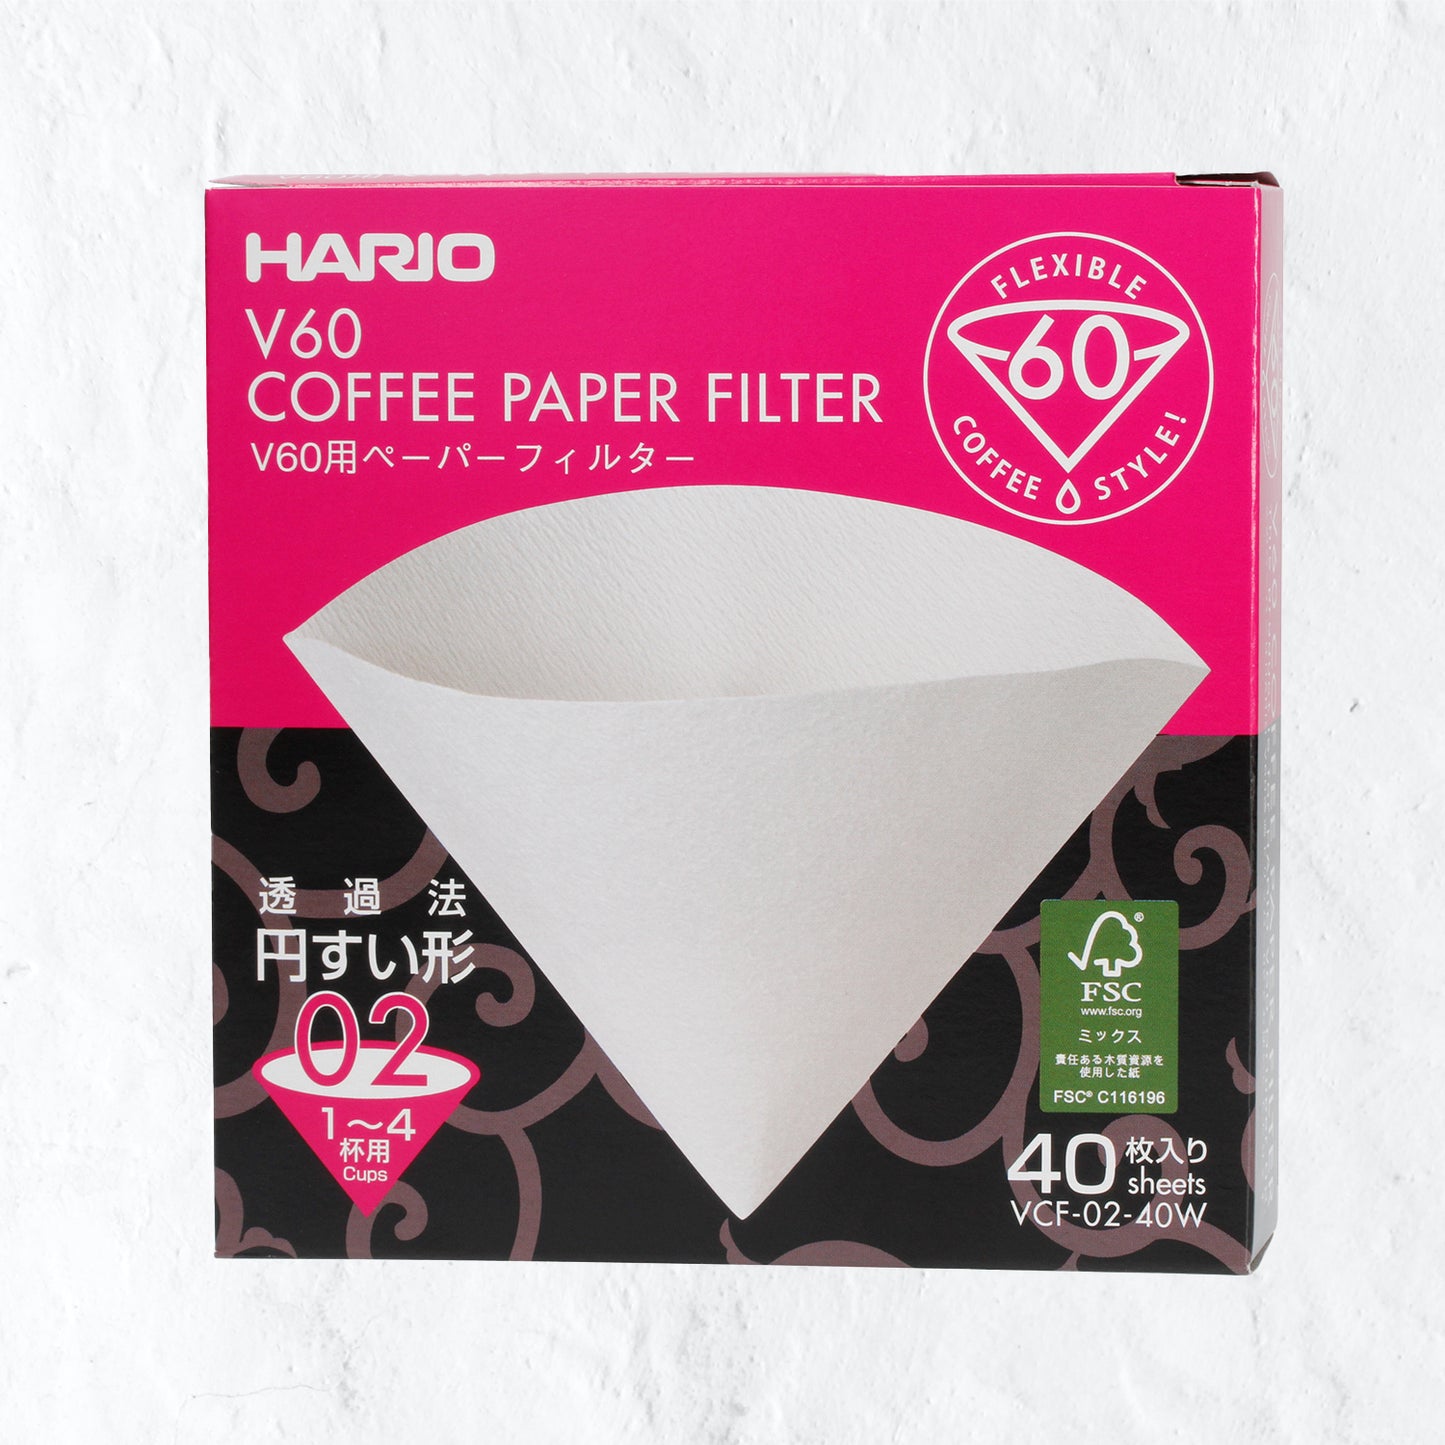 Hario paper filter - V60-01/40